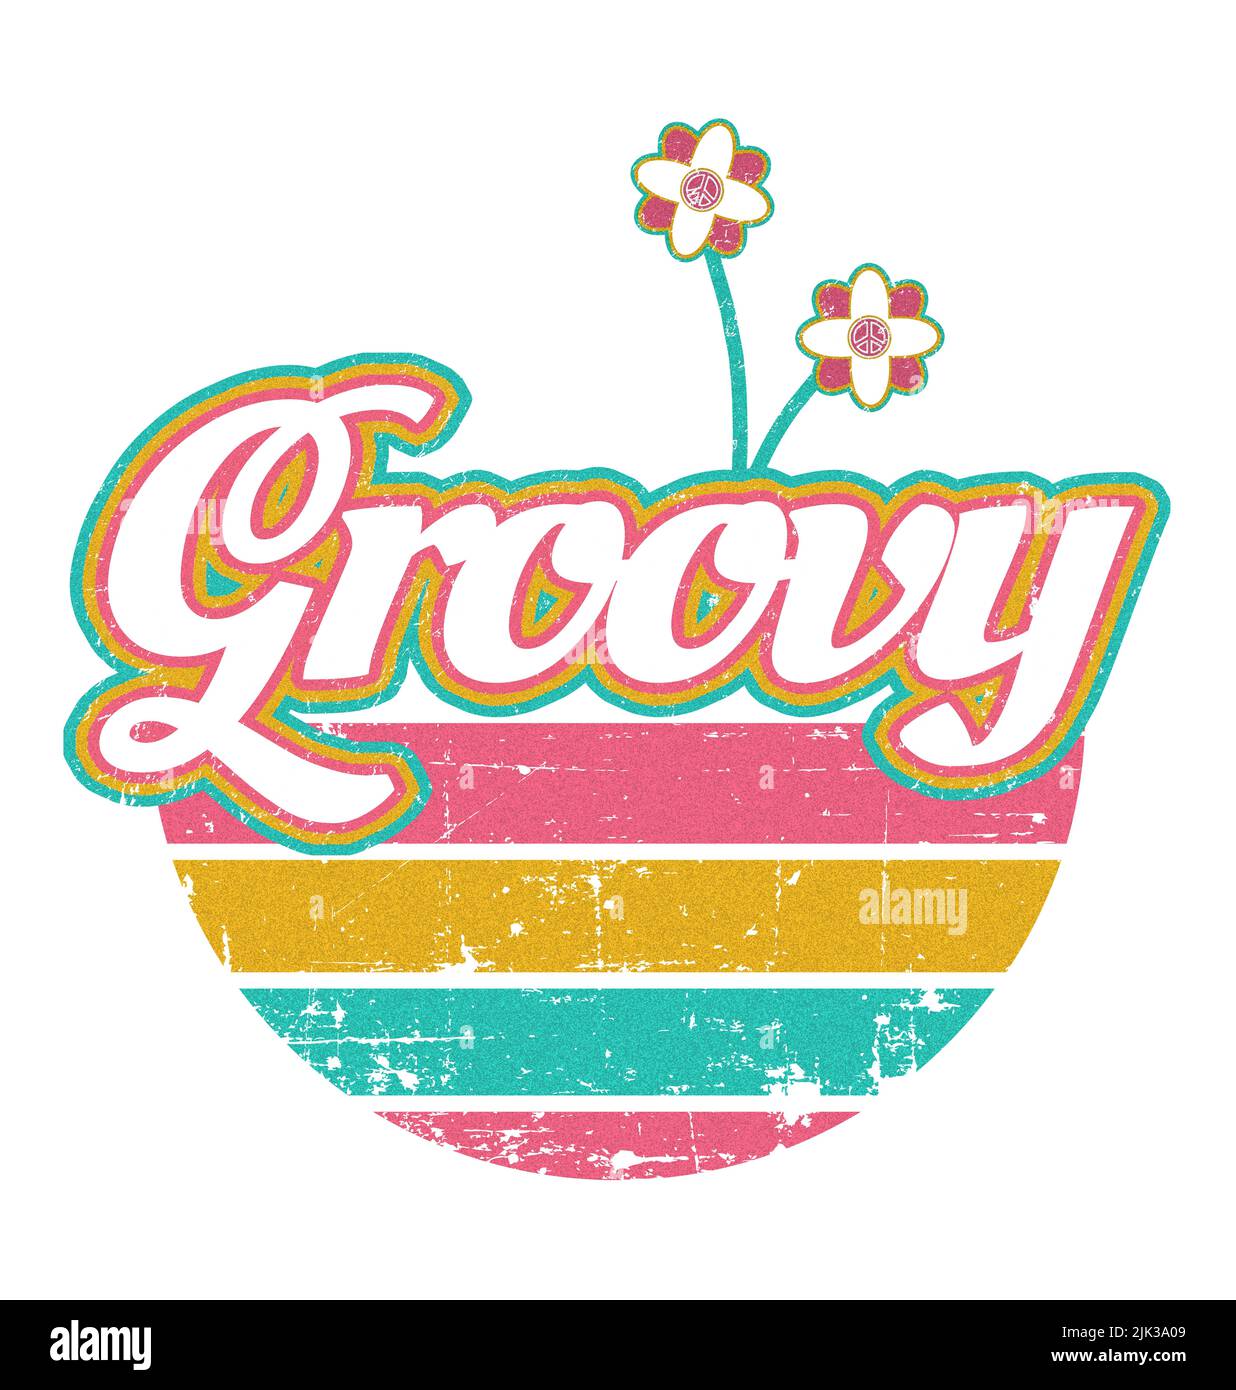 Retro Groovy Design - Vintage Graphic Stock Photo - Alamy